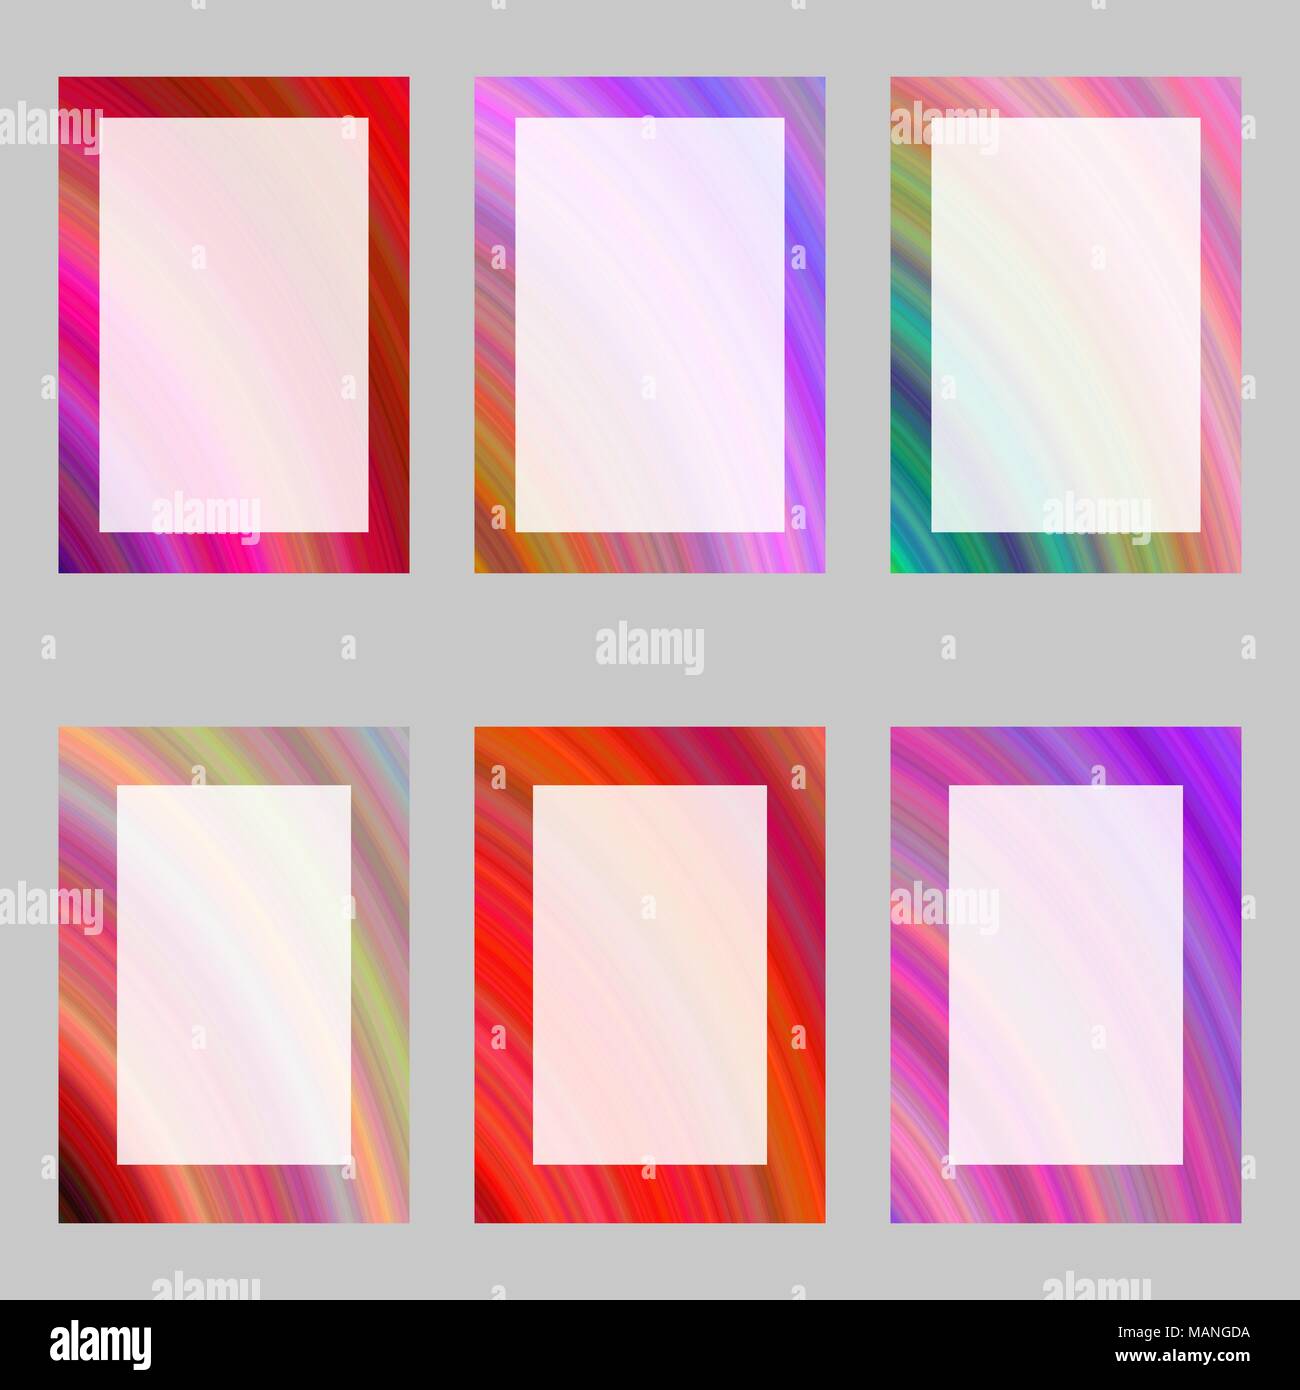 Farbenfrohe abstrakte digitale Kunst Broschüre Frame Set Stock Vektor